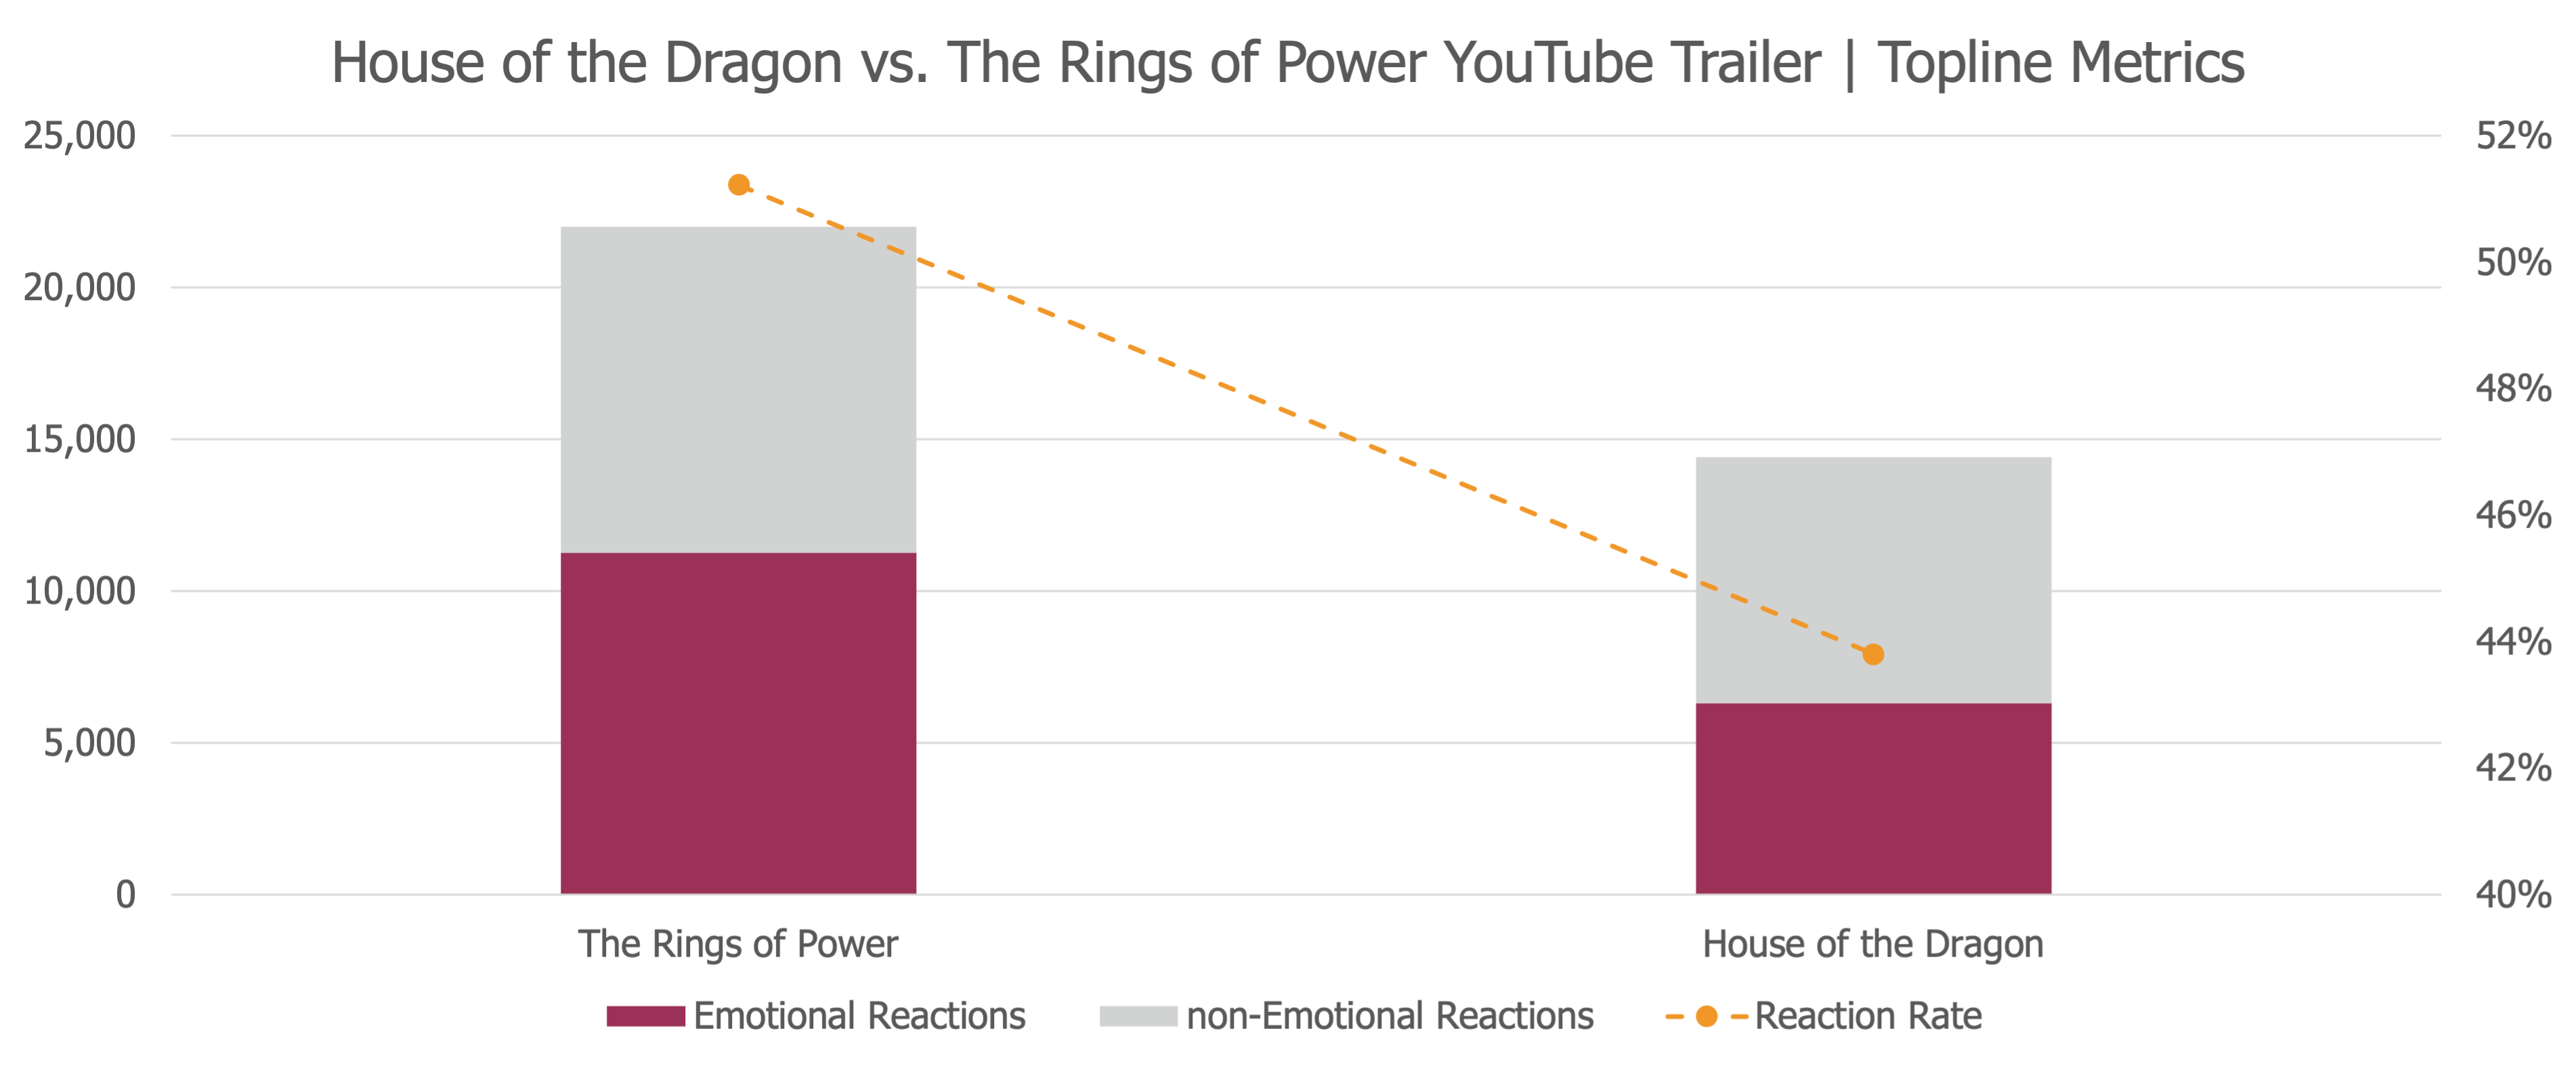 House of the Dragon vs. The Rings of Power YouTube Trailer | Topline Metrics